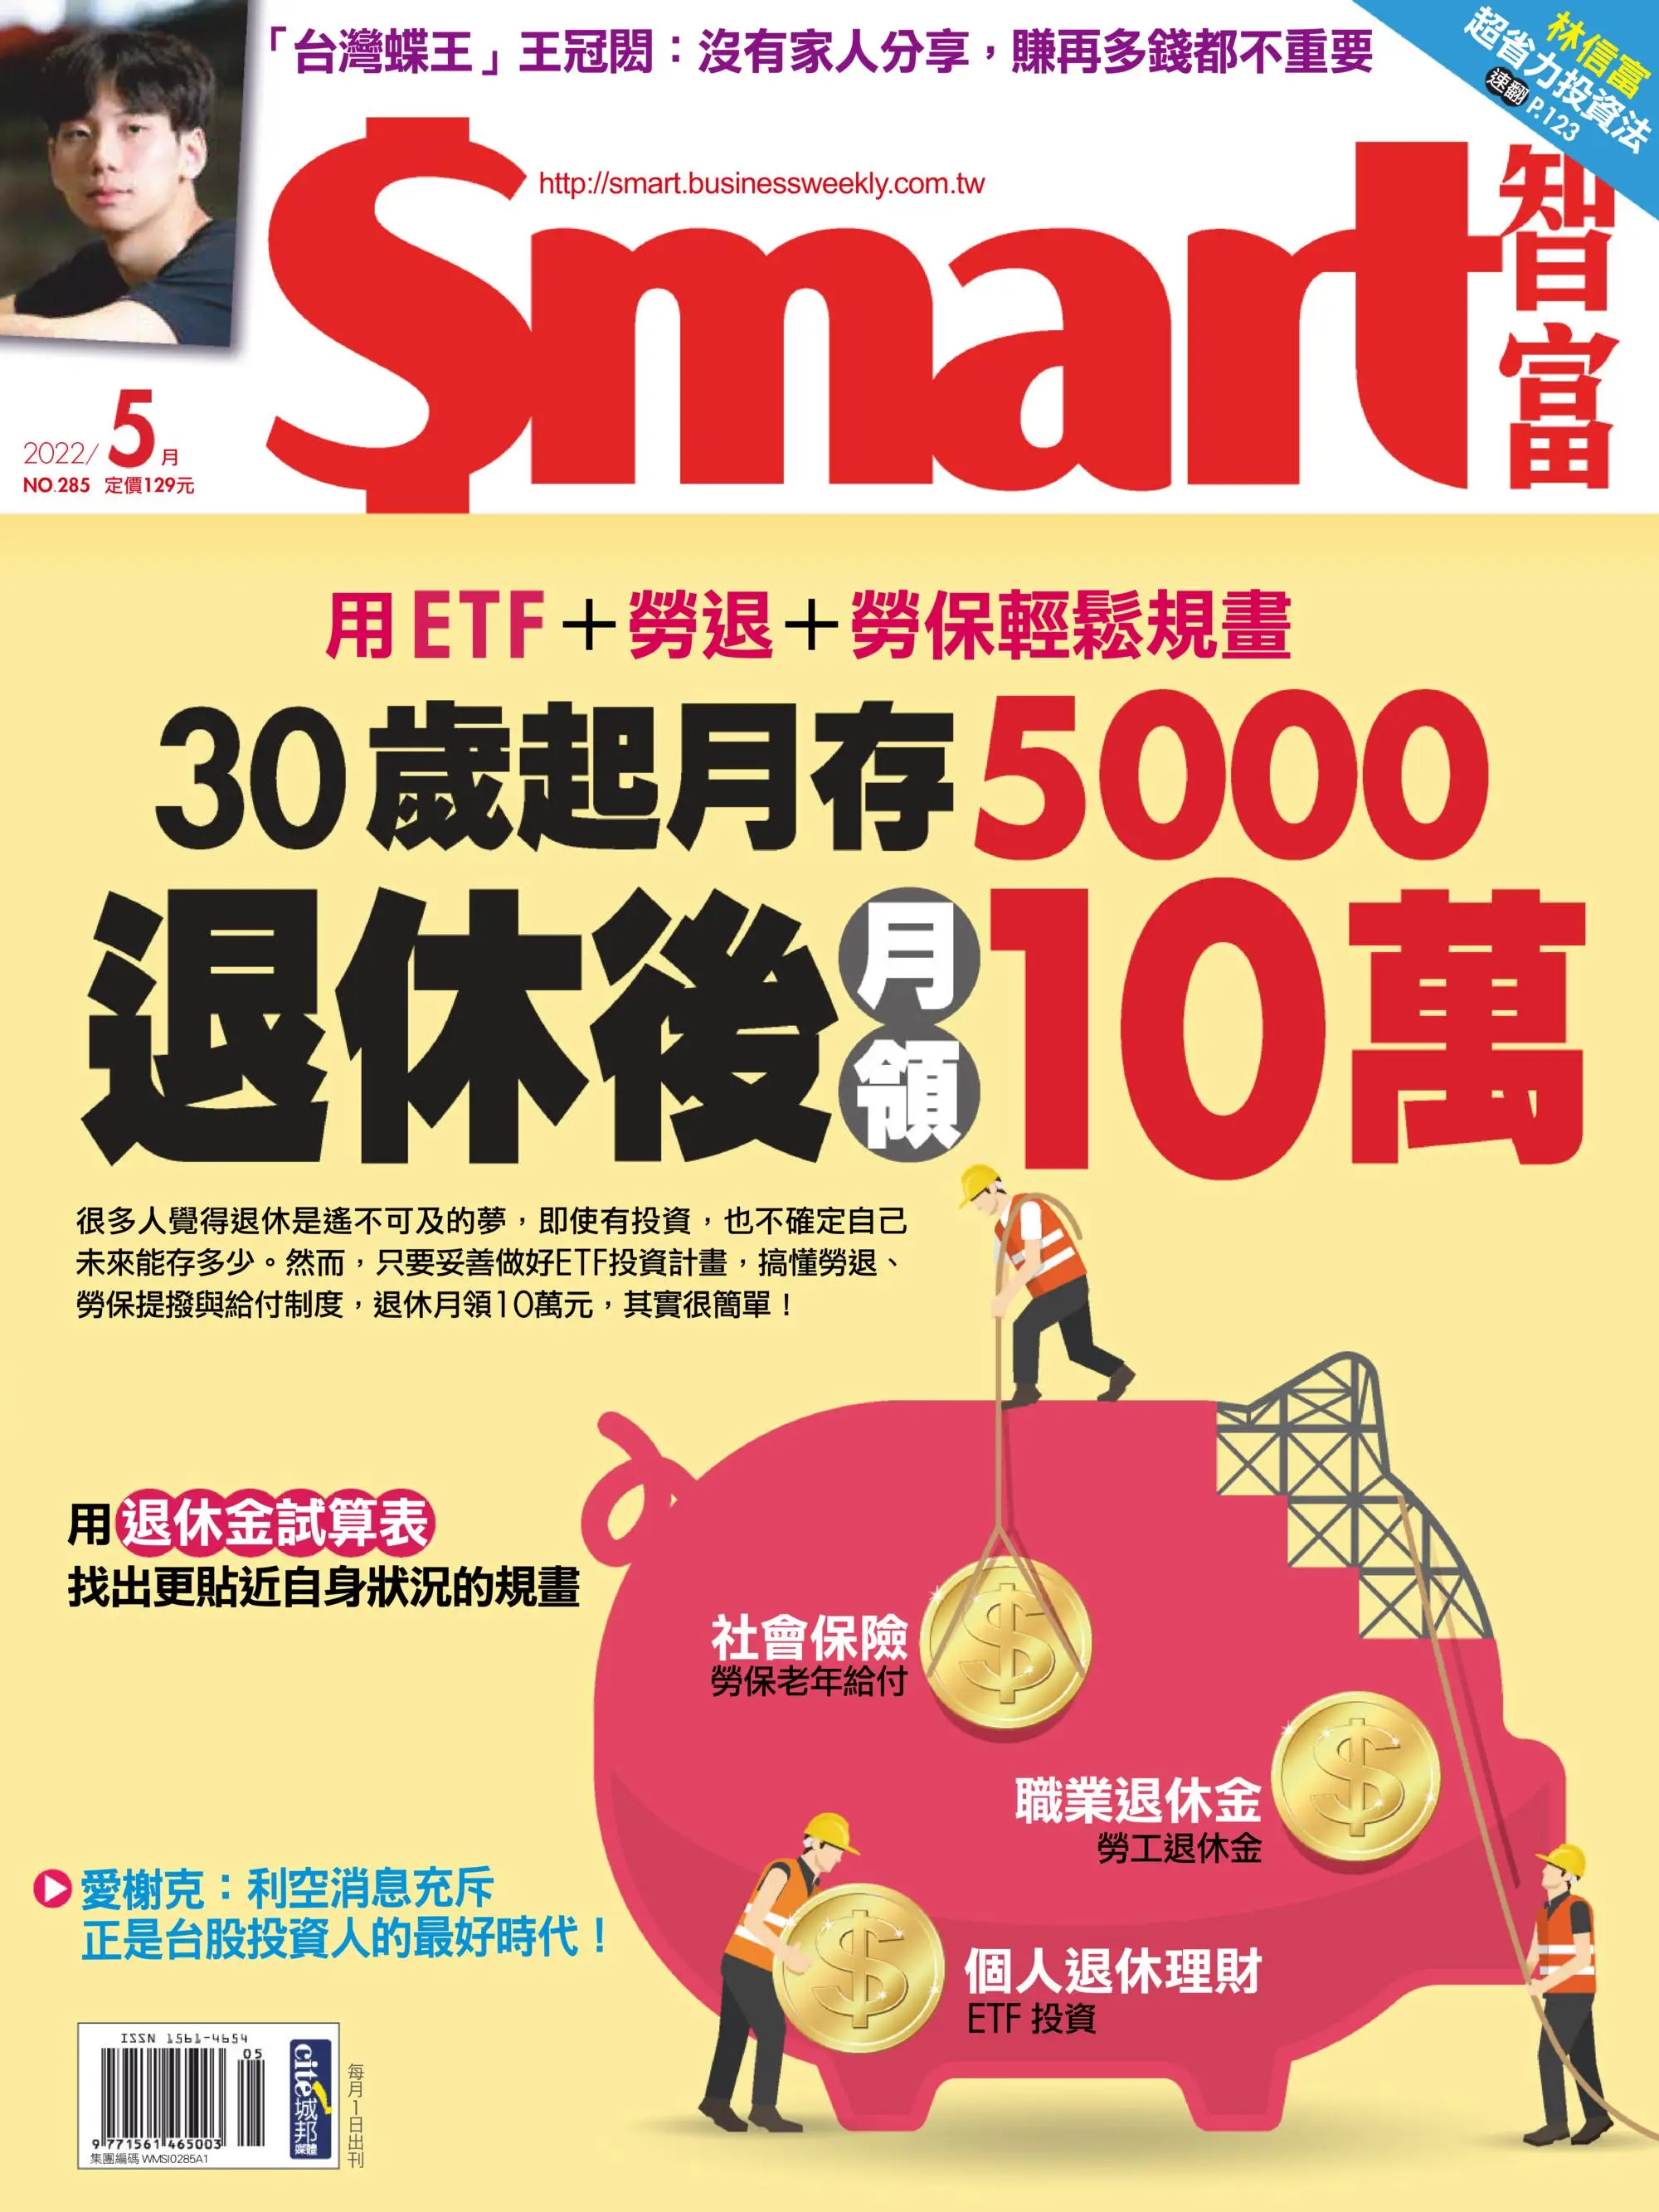 Smart 智富 用ETF+勞退+勞保輕鬆規劃 退休後月領10萬 2022年5月 PDF電子雜誌下載